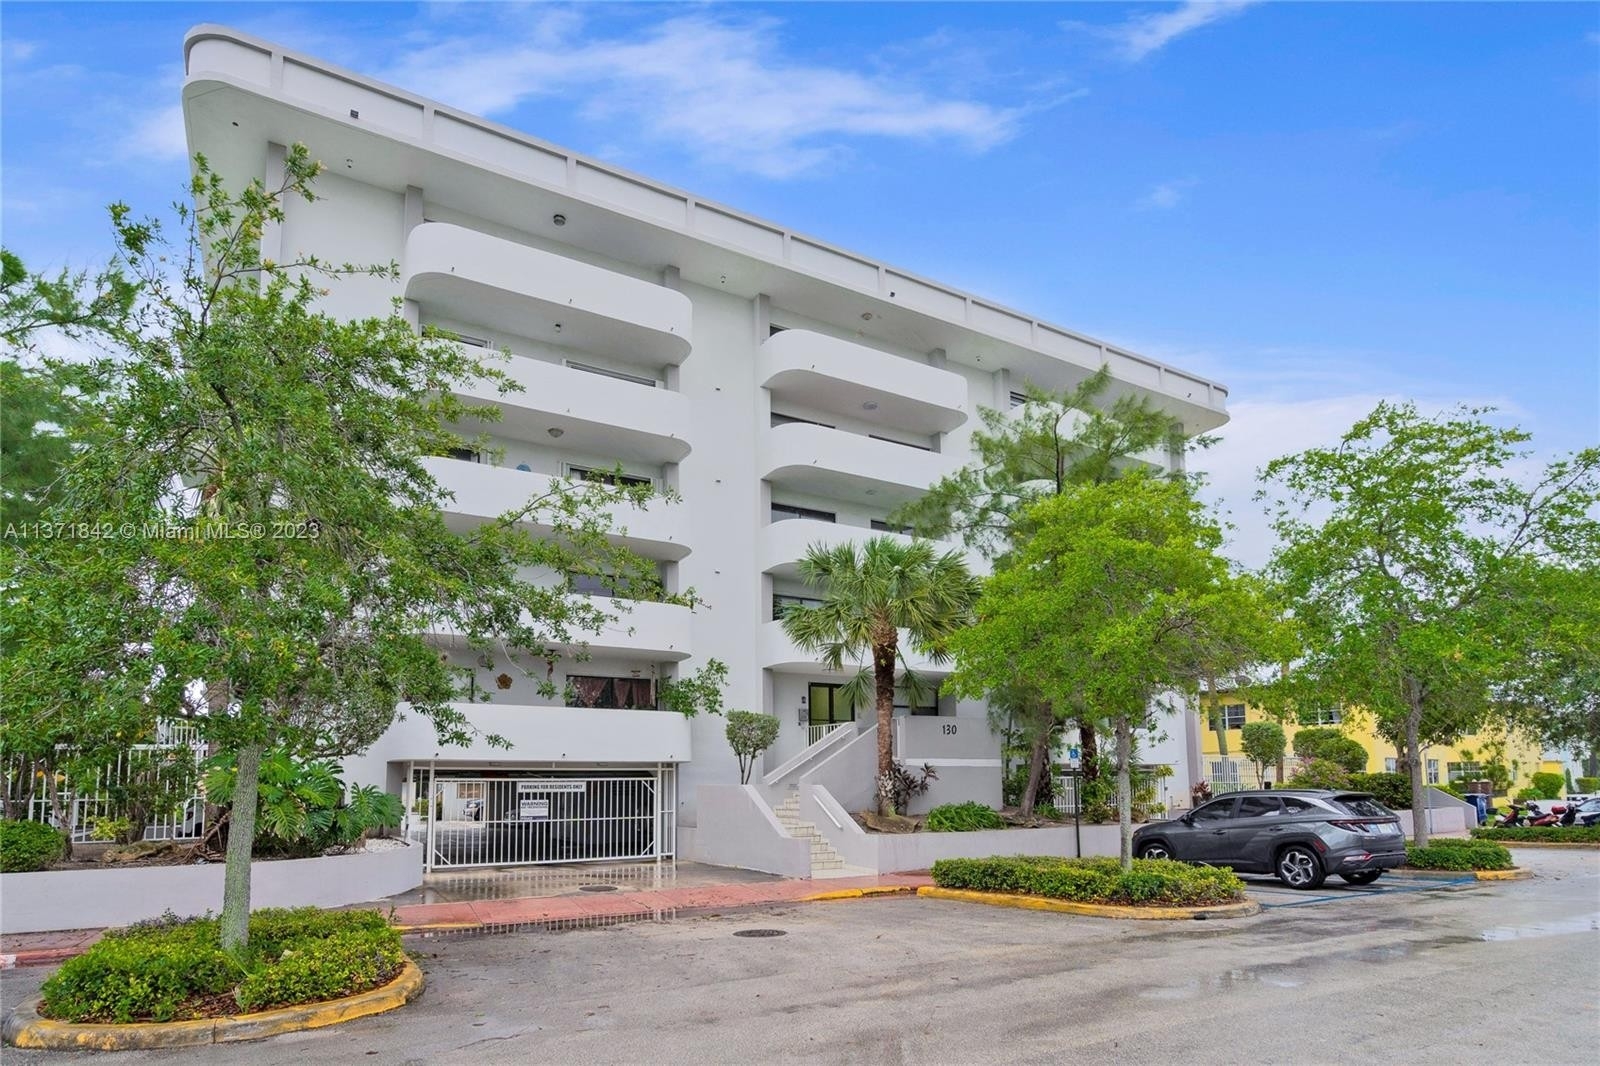 Property at 130 S Shore Dr, 6C Normandy Shores, Miami Beach, FL 33141